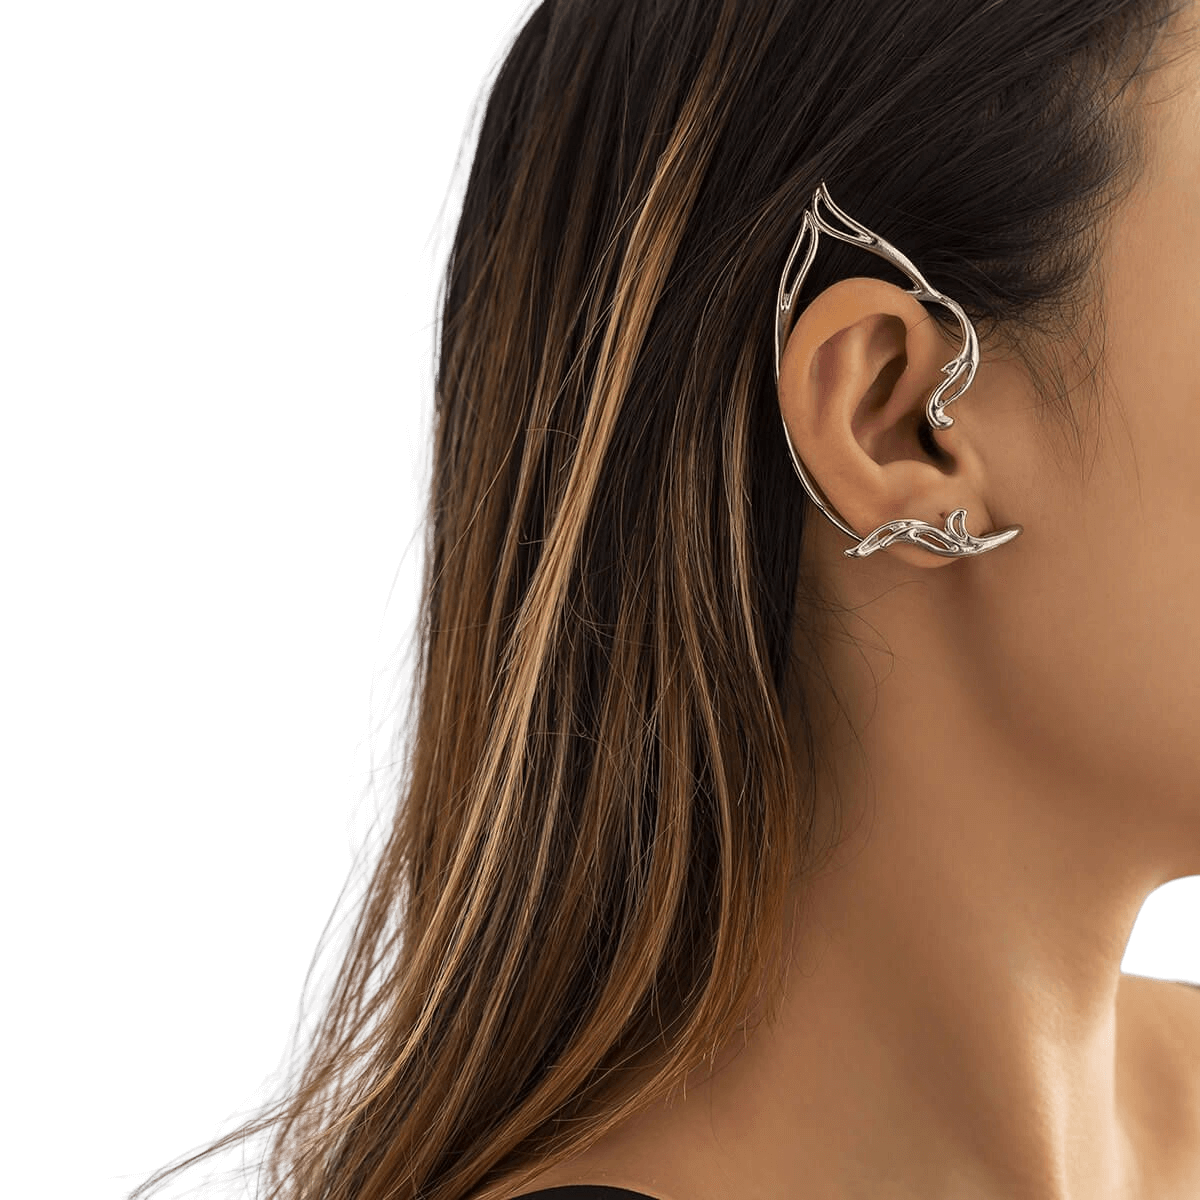 Minimalist Elf Ear Shaped Metal Earrings